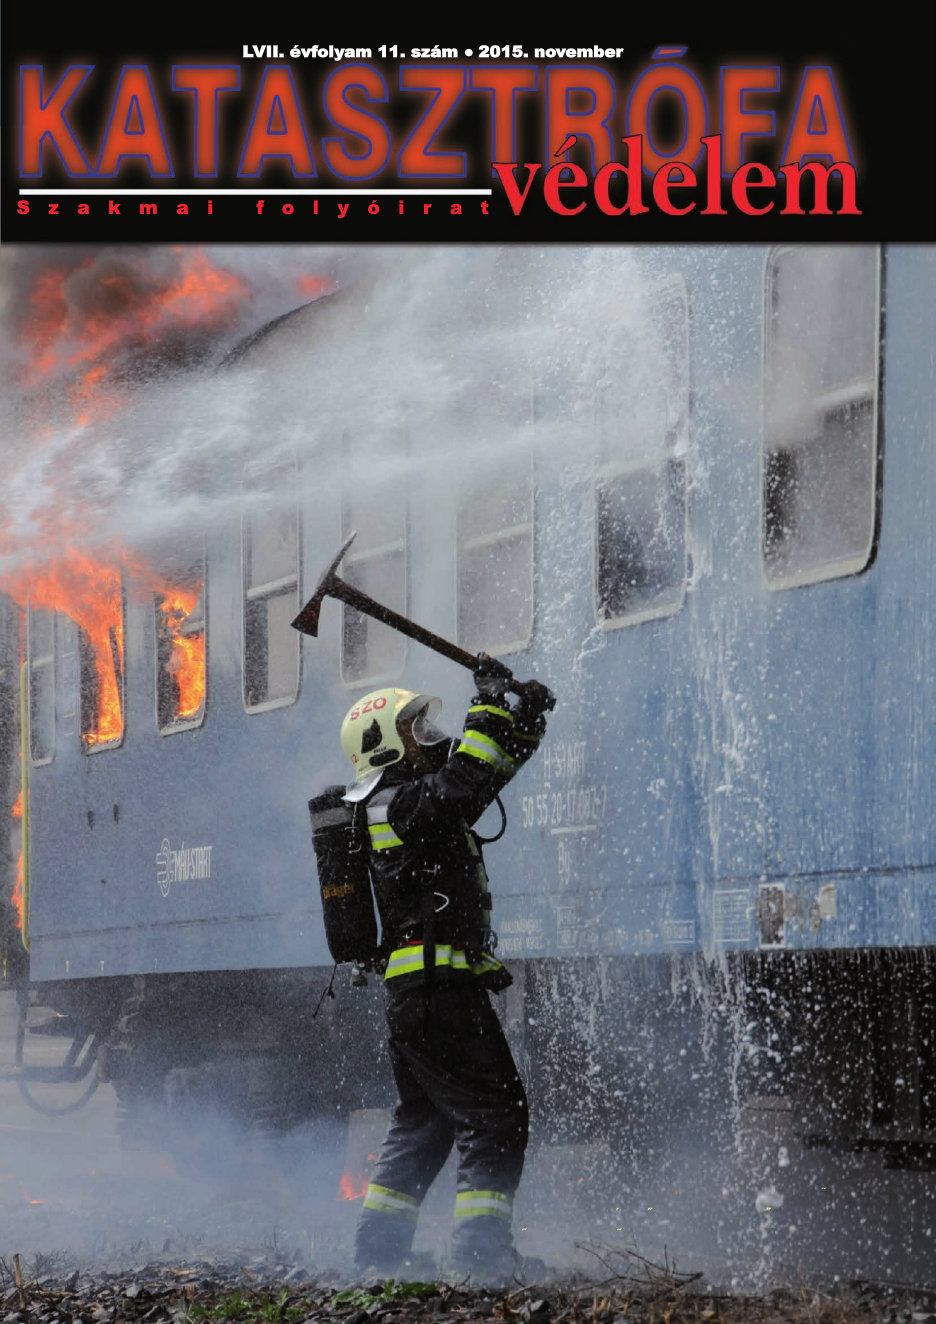 A Katasztrófavédelem magazin LVII. évfolyam 11. szám megtekintése